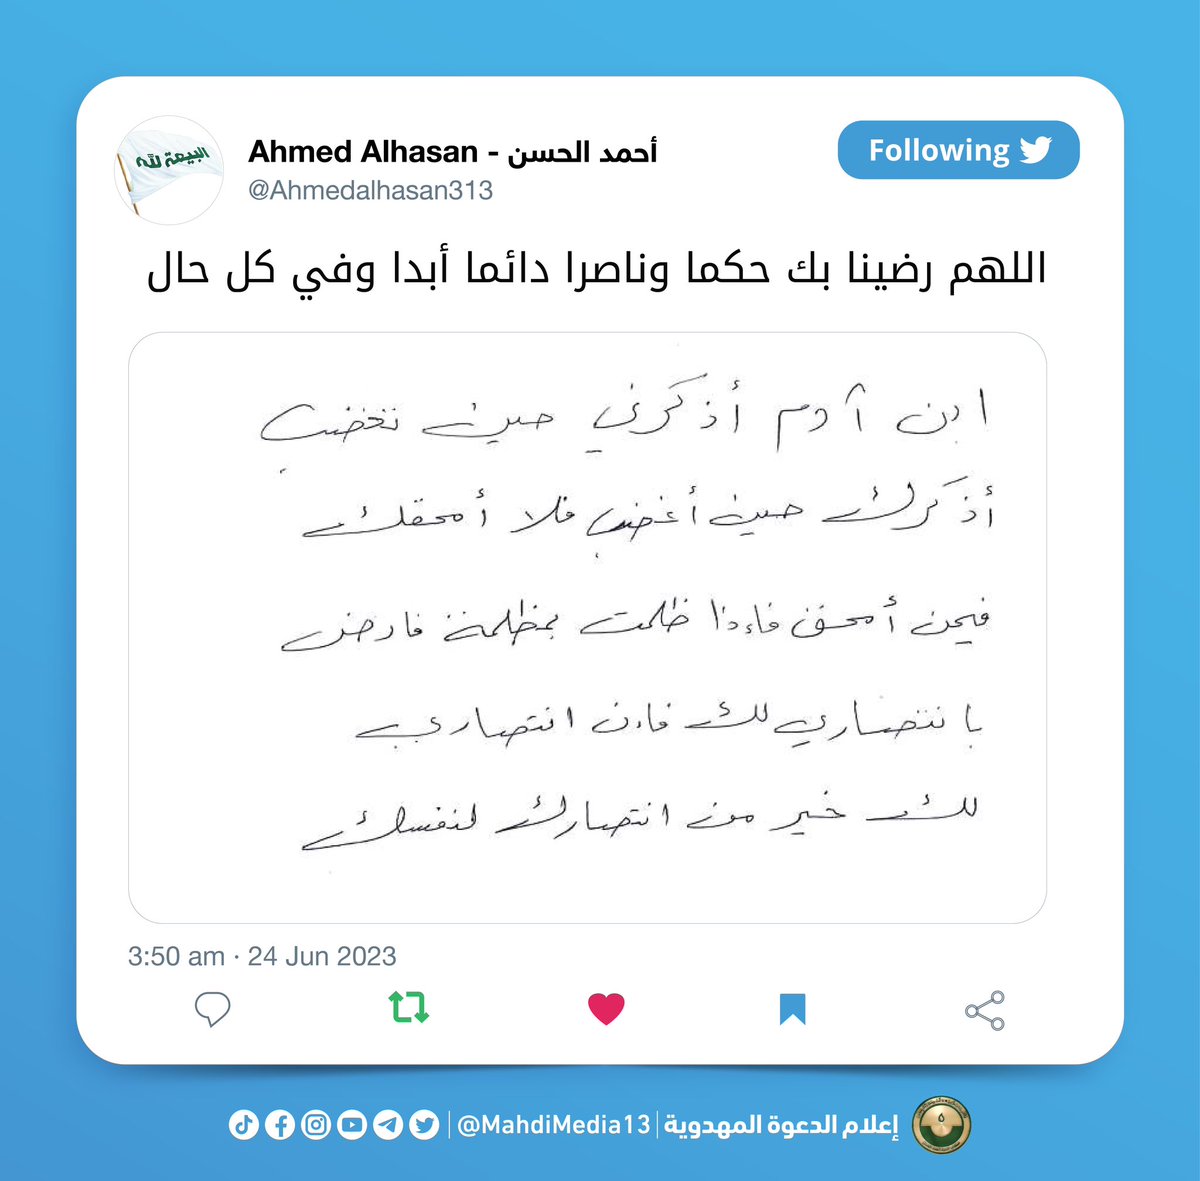 كتب السيد #احمد_الحسن على صفحته في تويتر:

[اللهم رضينا بك حكما وناصرا دائما أبدا وفي كل حال]

السبت 24.6.2023
twitter.com/Ahmedalhasan31…